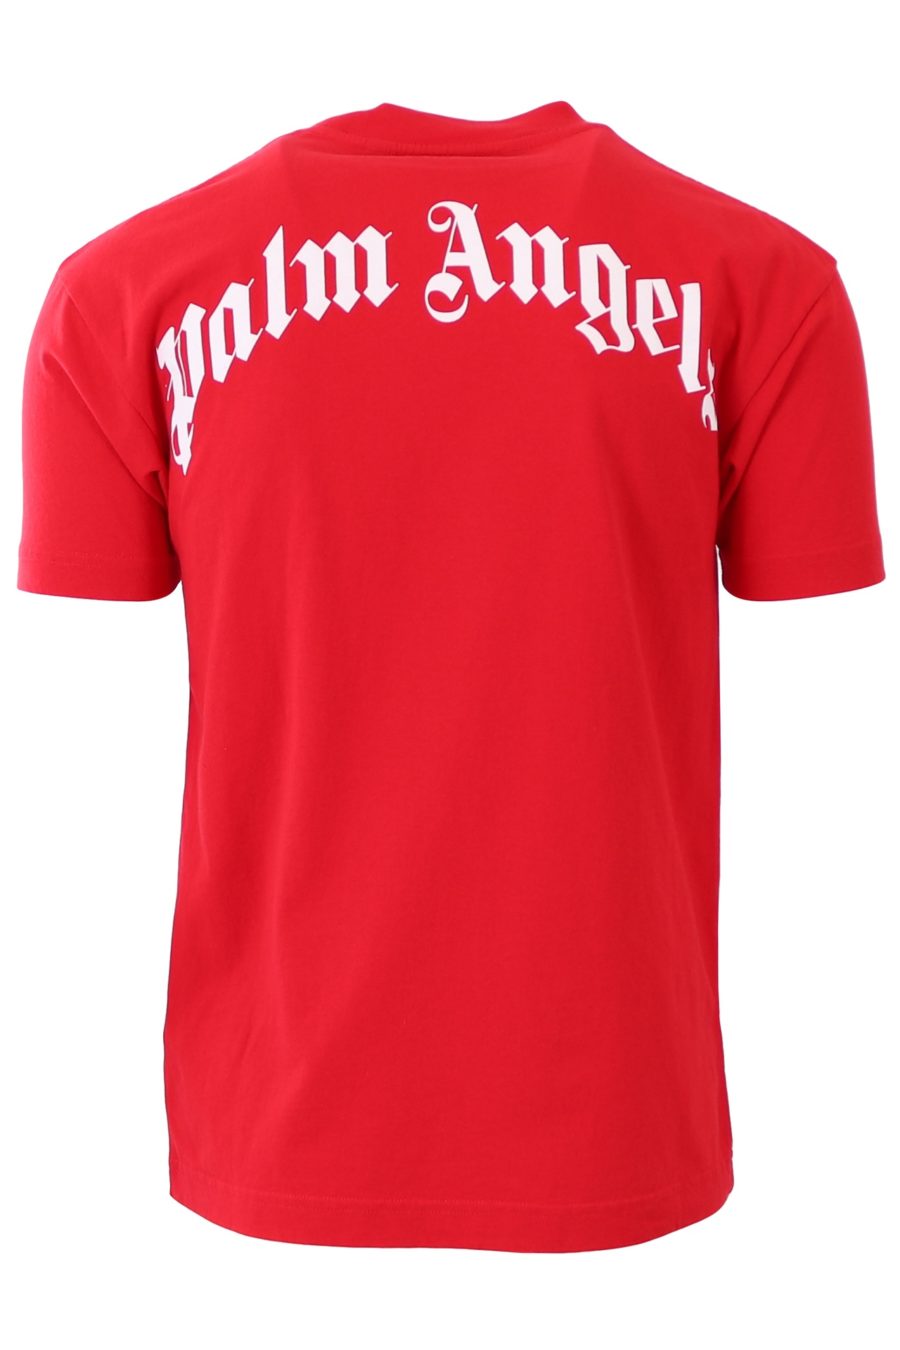 T-shirt Palm Angels rouge avec ours - 32e223a3748e678725c4a8c812146d994f138f03